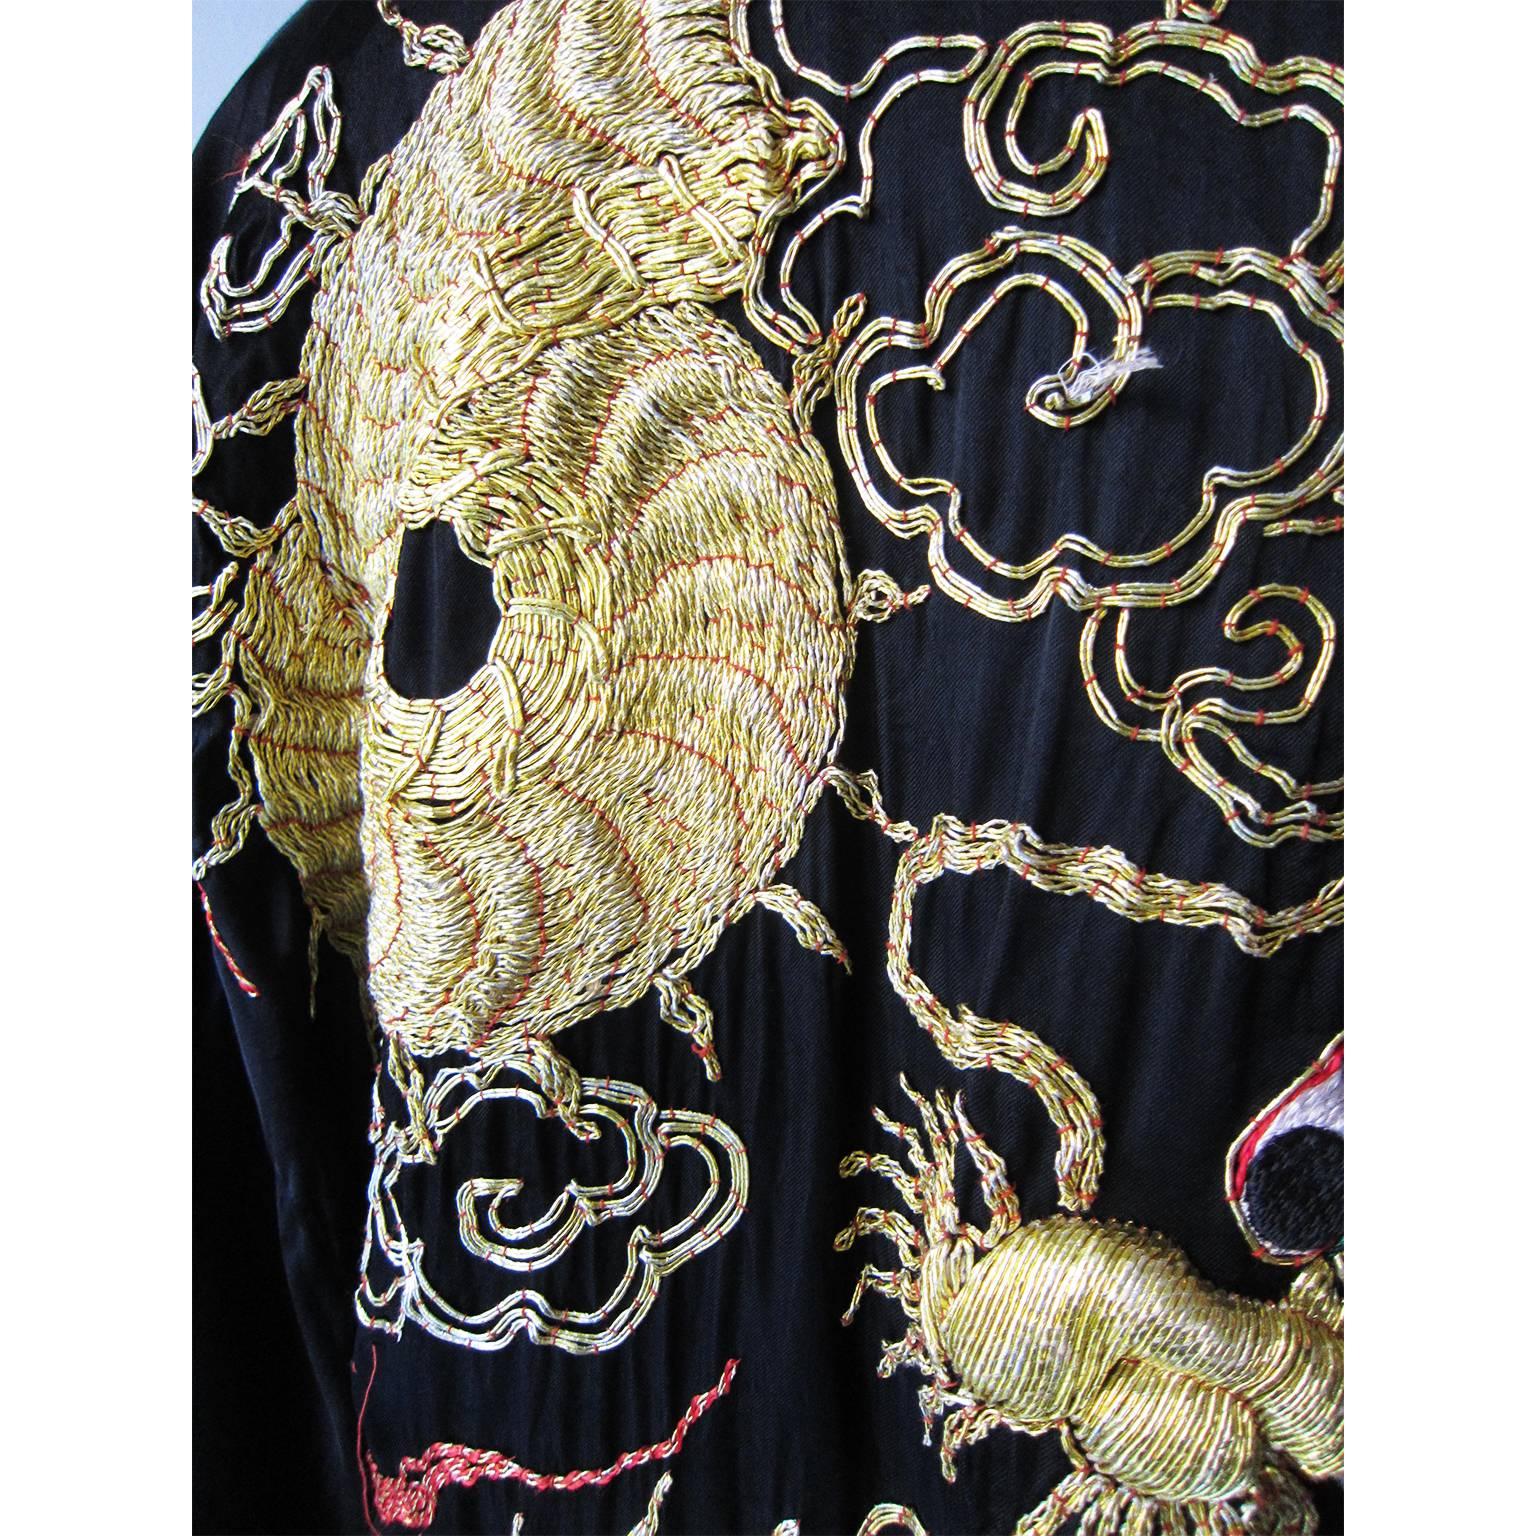 Black Golden Dragon Fuku Ryu Kimono Robe, 1940s